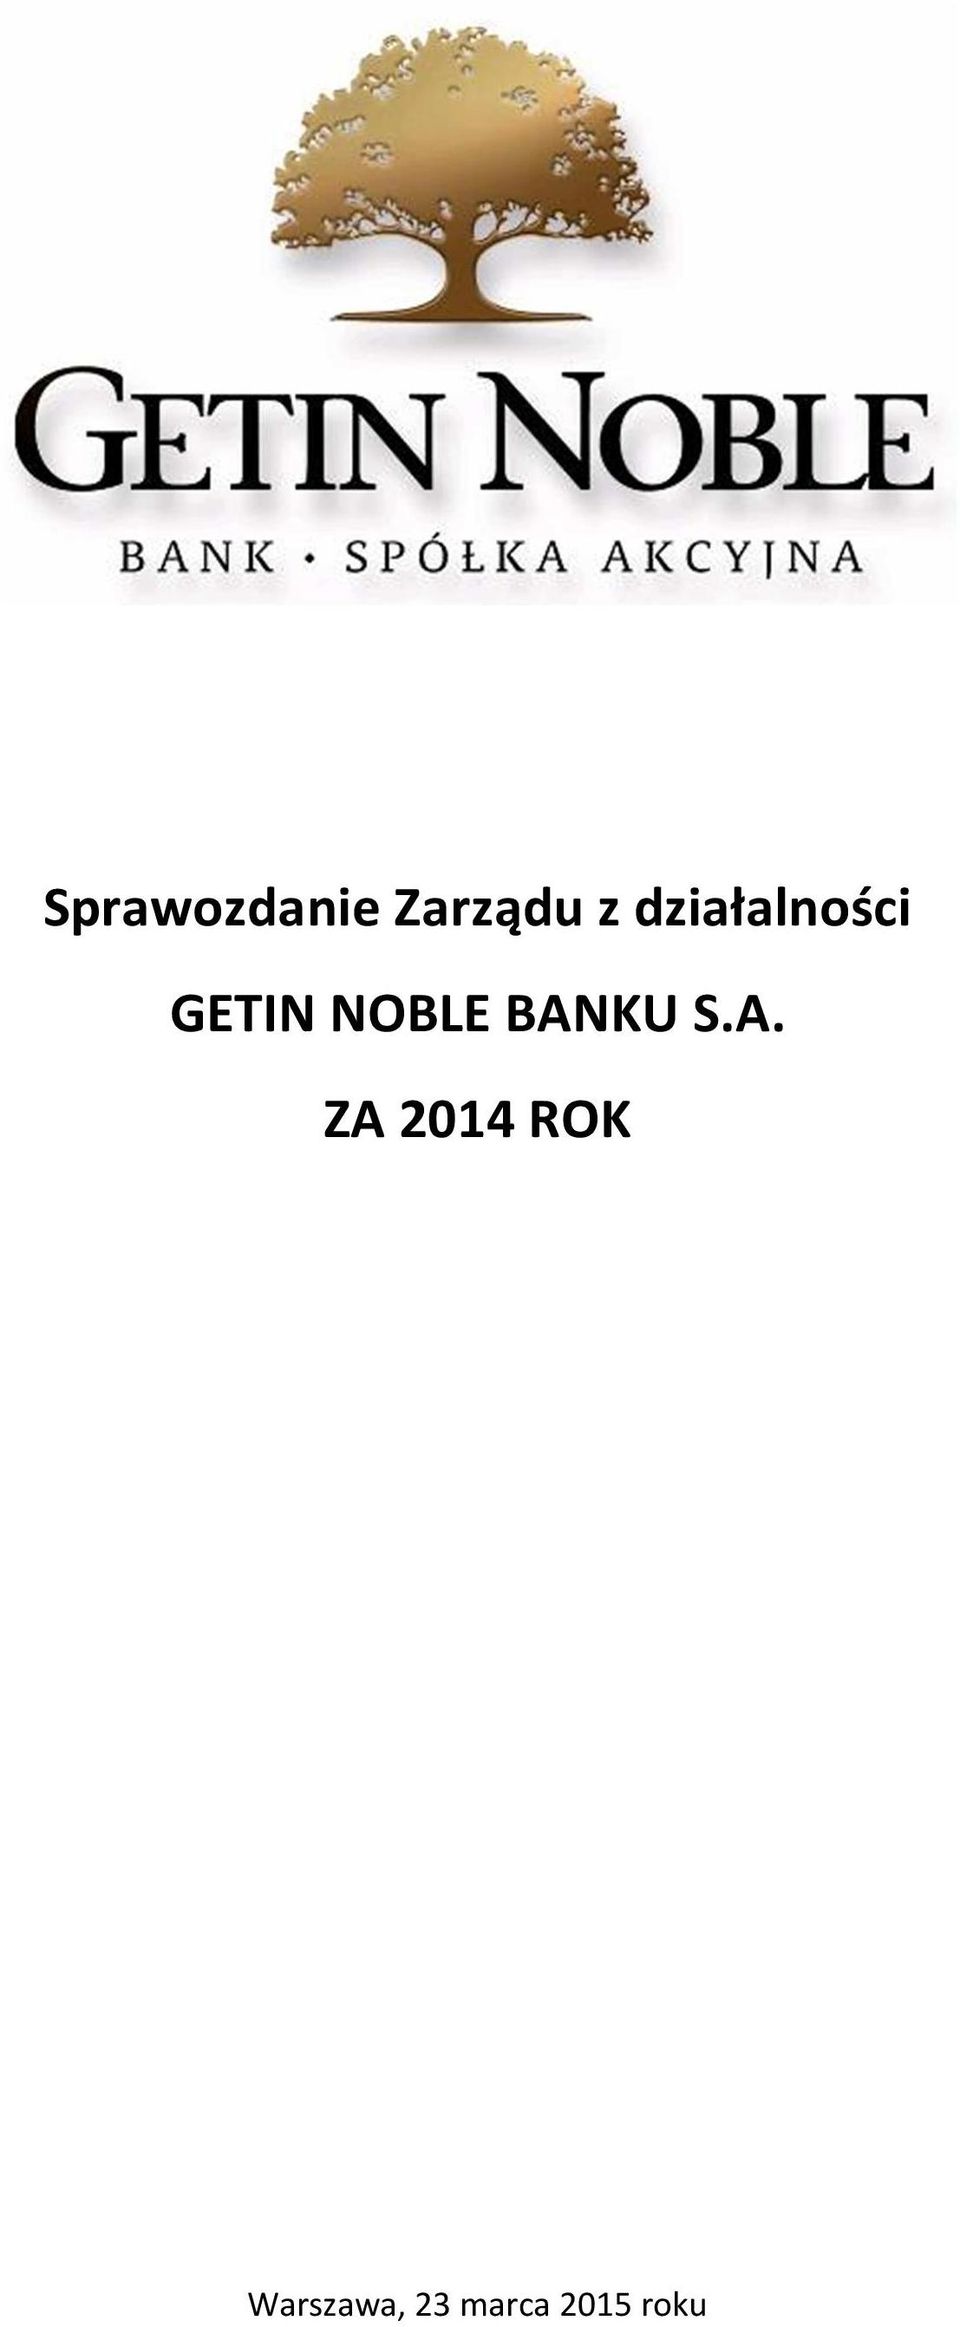 BANKU S.A. ZA 2014 ROK